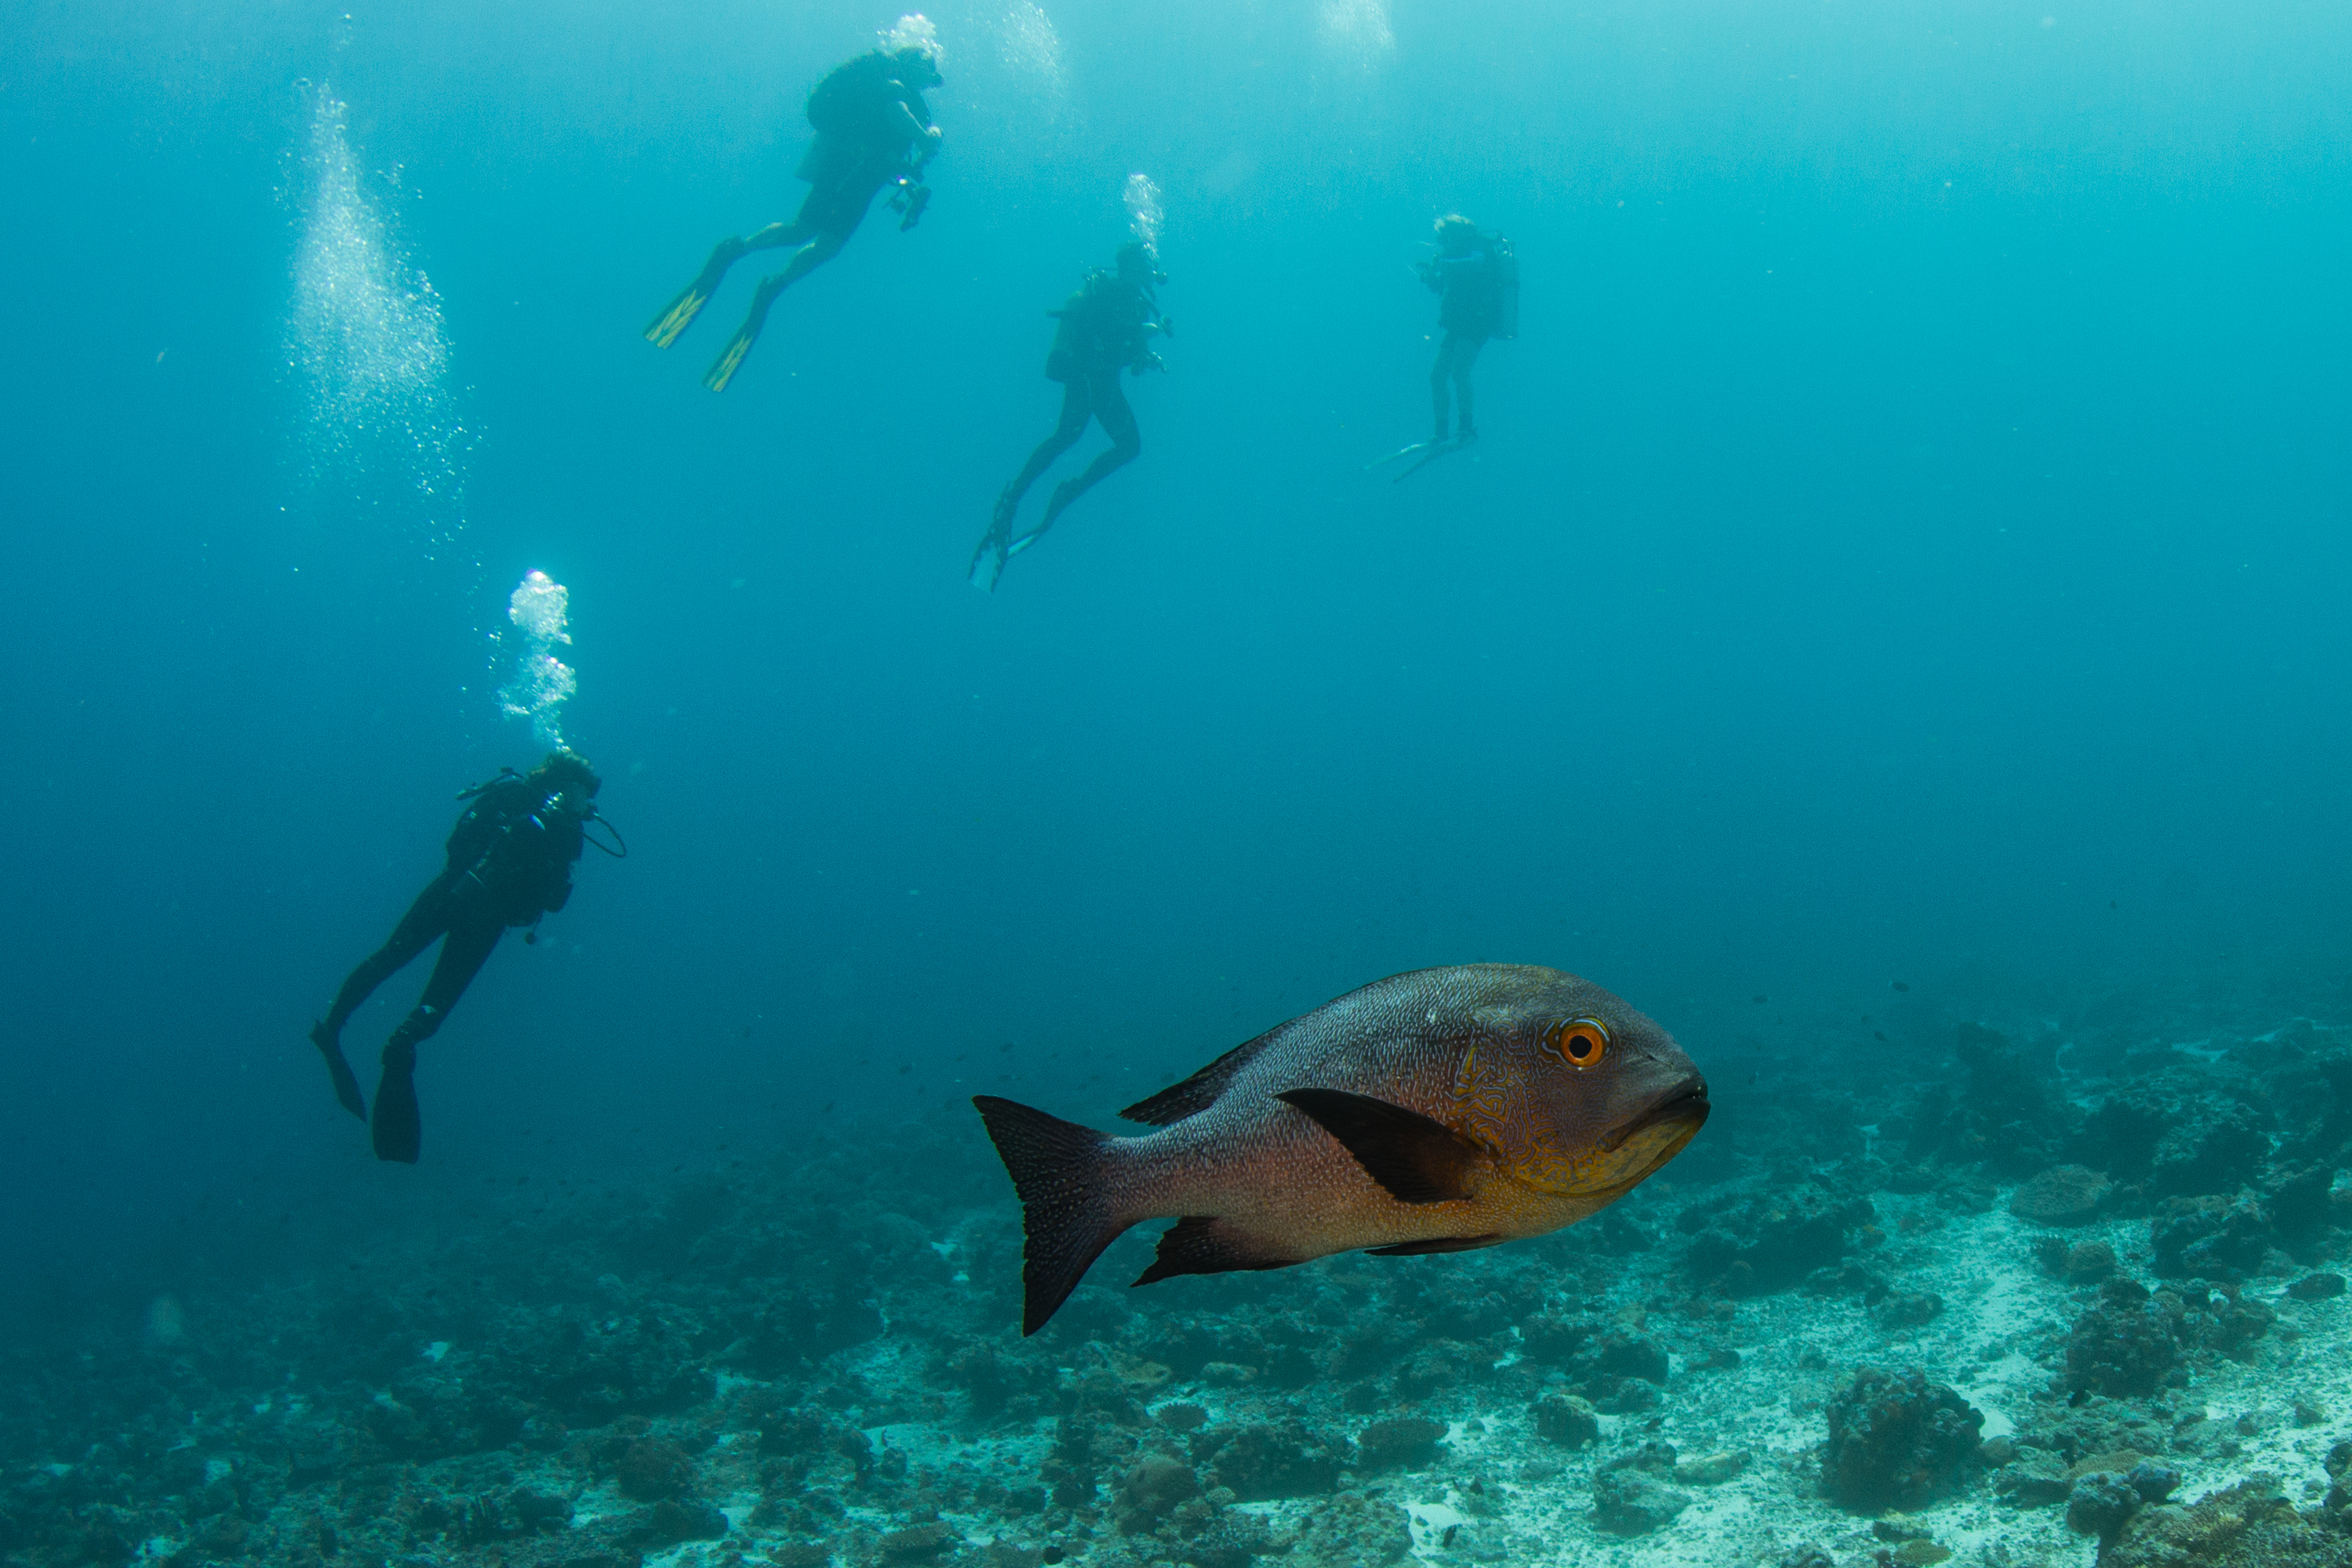 SCUBA Diving in the Maldives